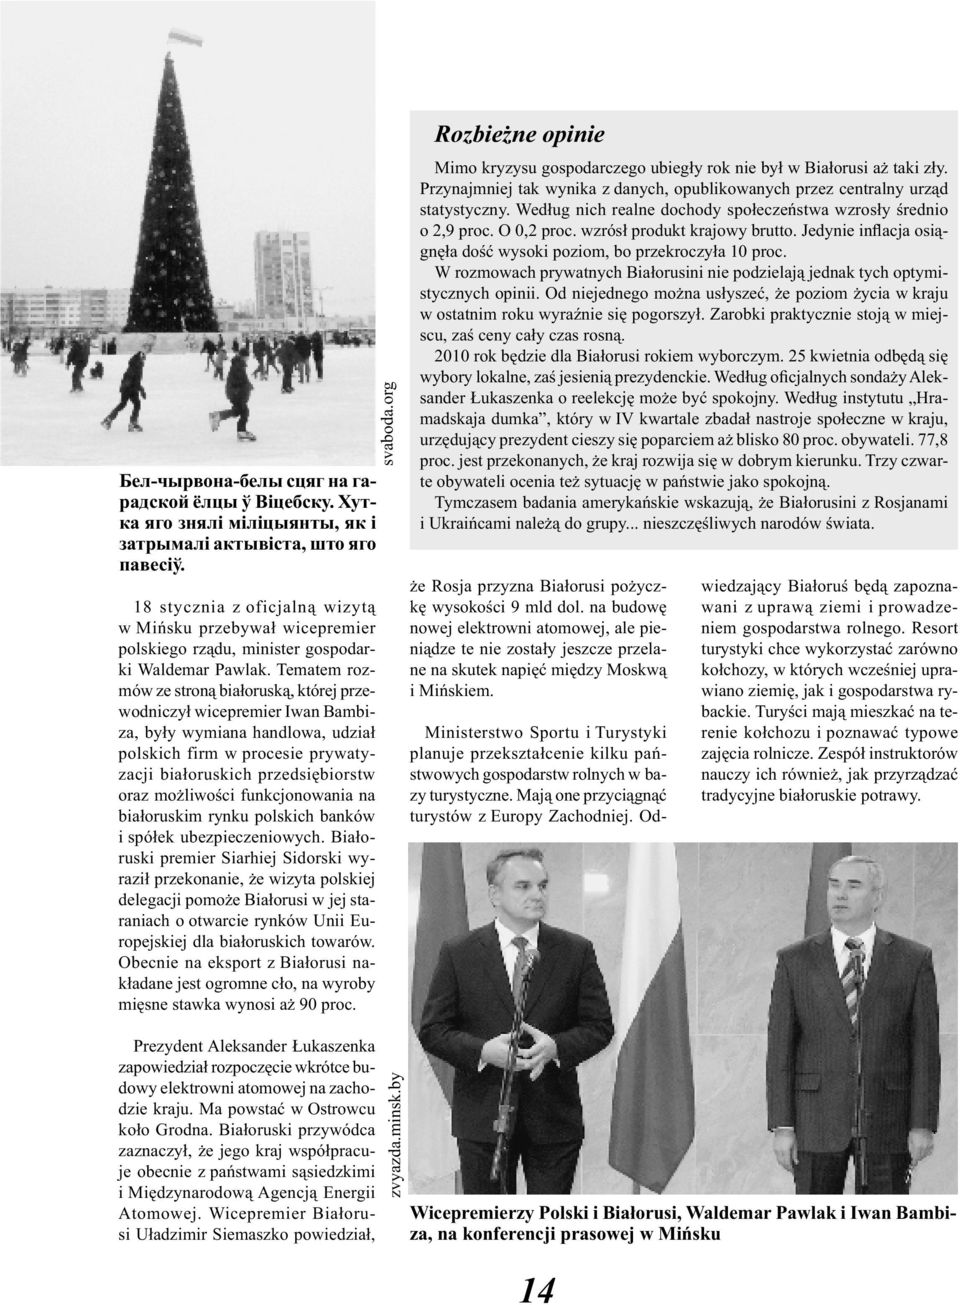 Tematem rozmów ze stroną białoruską, której przewodniczył wicepremier Iwan Bambiza, były wymiana handlowa, udział polskich firm w procesie prywatyzacji białoruskich przedsiębiorstw oraz możliwości